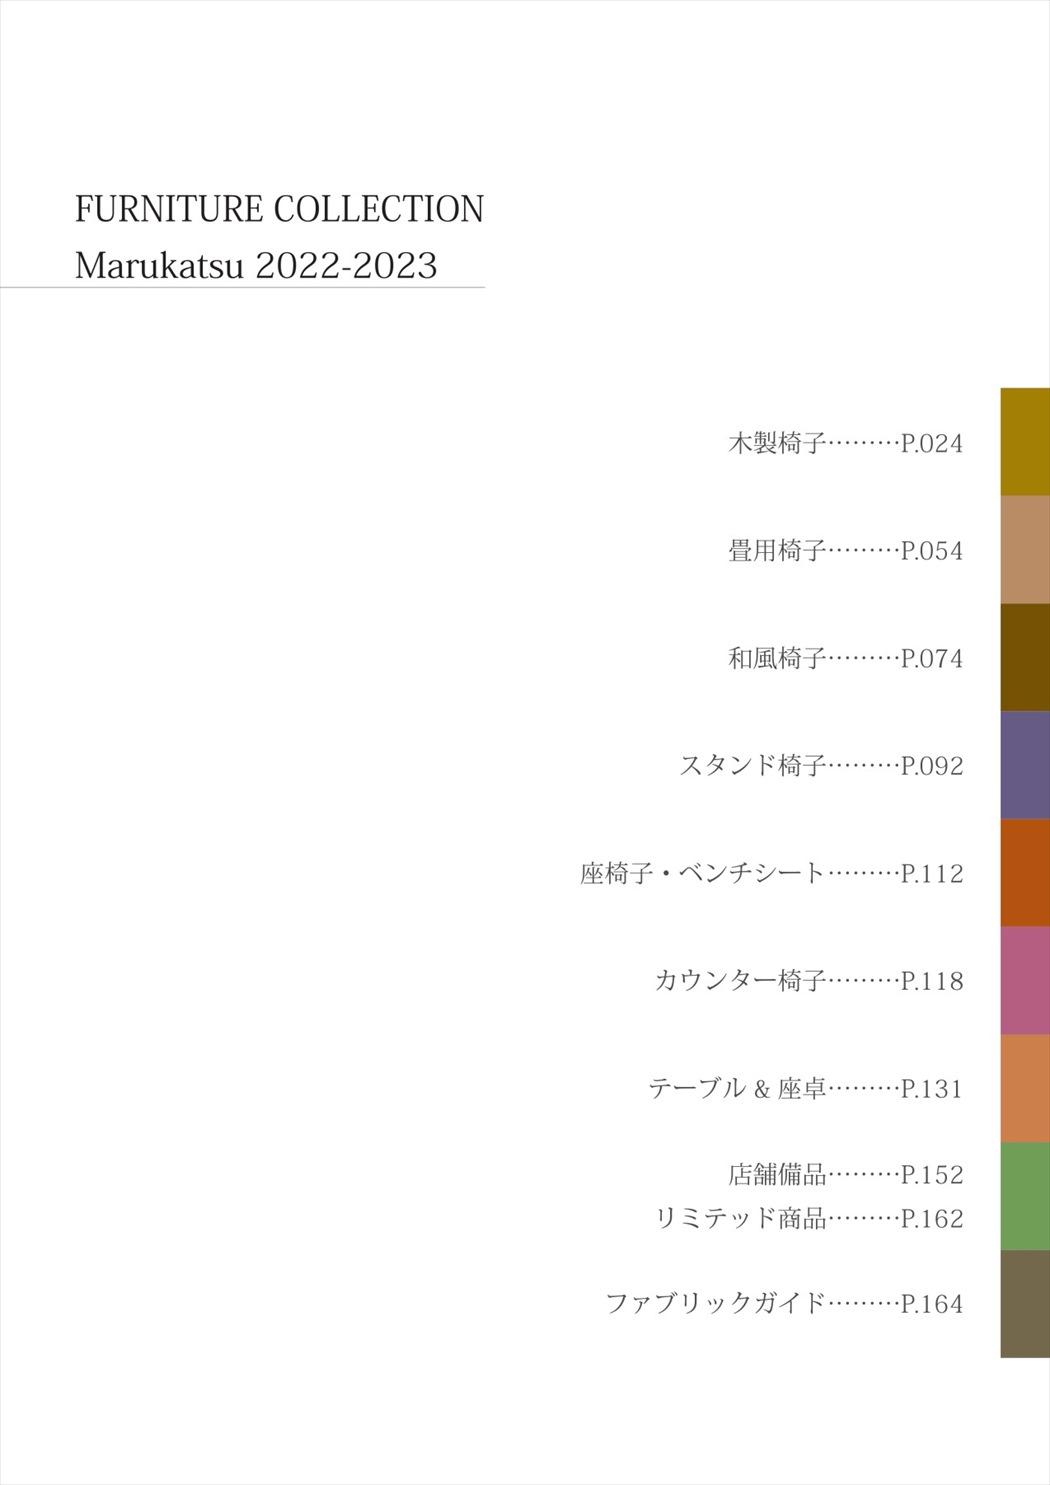 業務用家具「Marukatsu(マルカツ)」のヤマダ家具工芸による商品カタログサイト